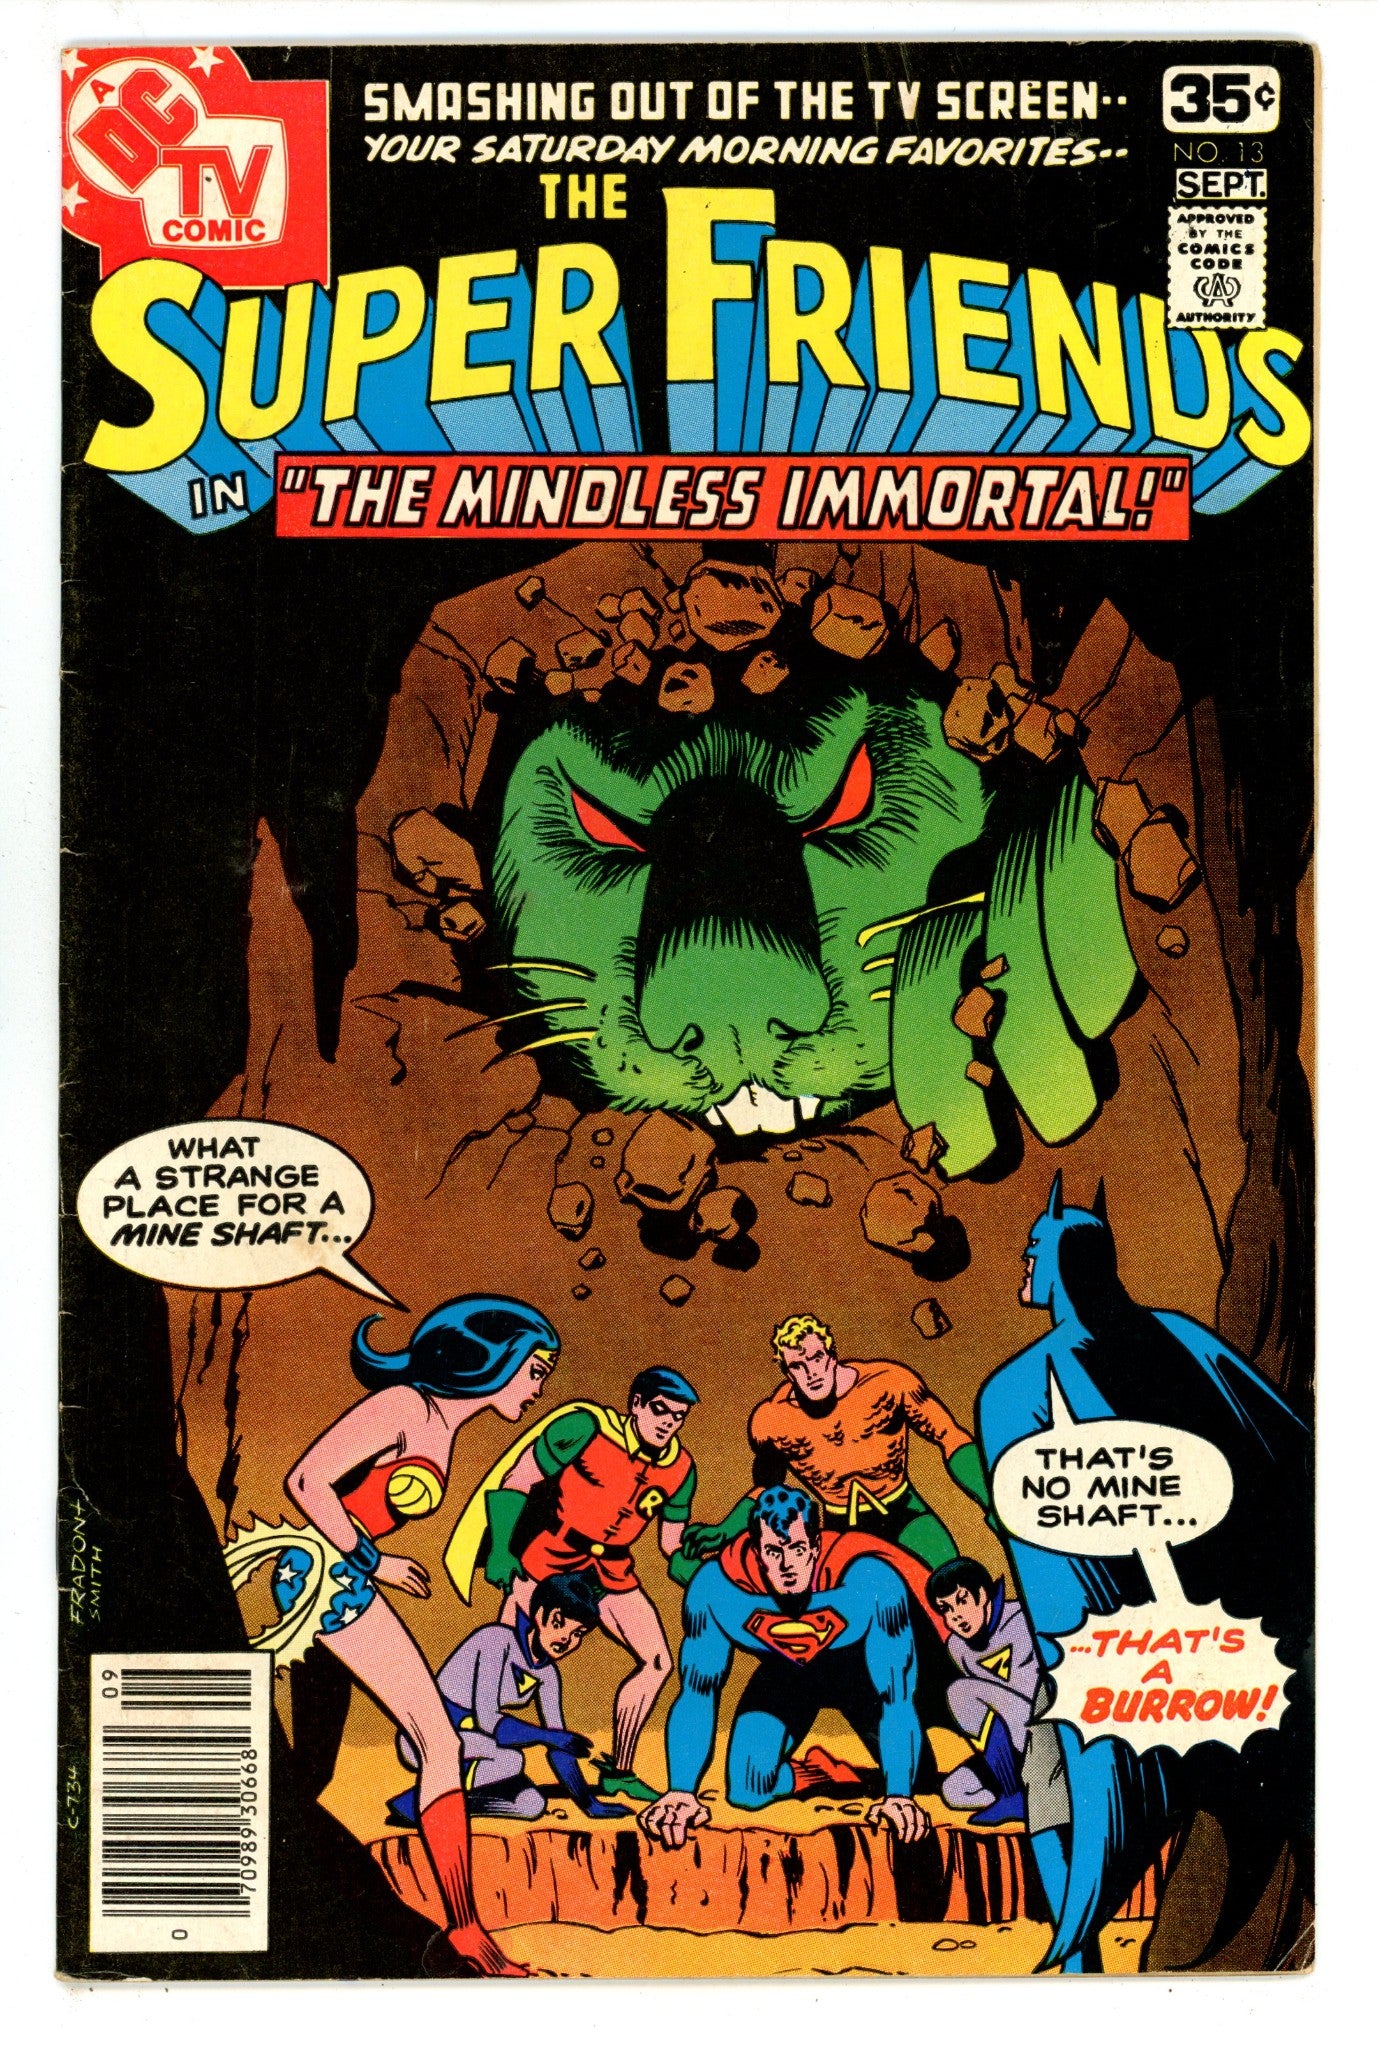 Super Friends Vol 1 13 VG (4.0) (1978) 